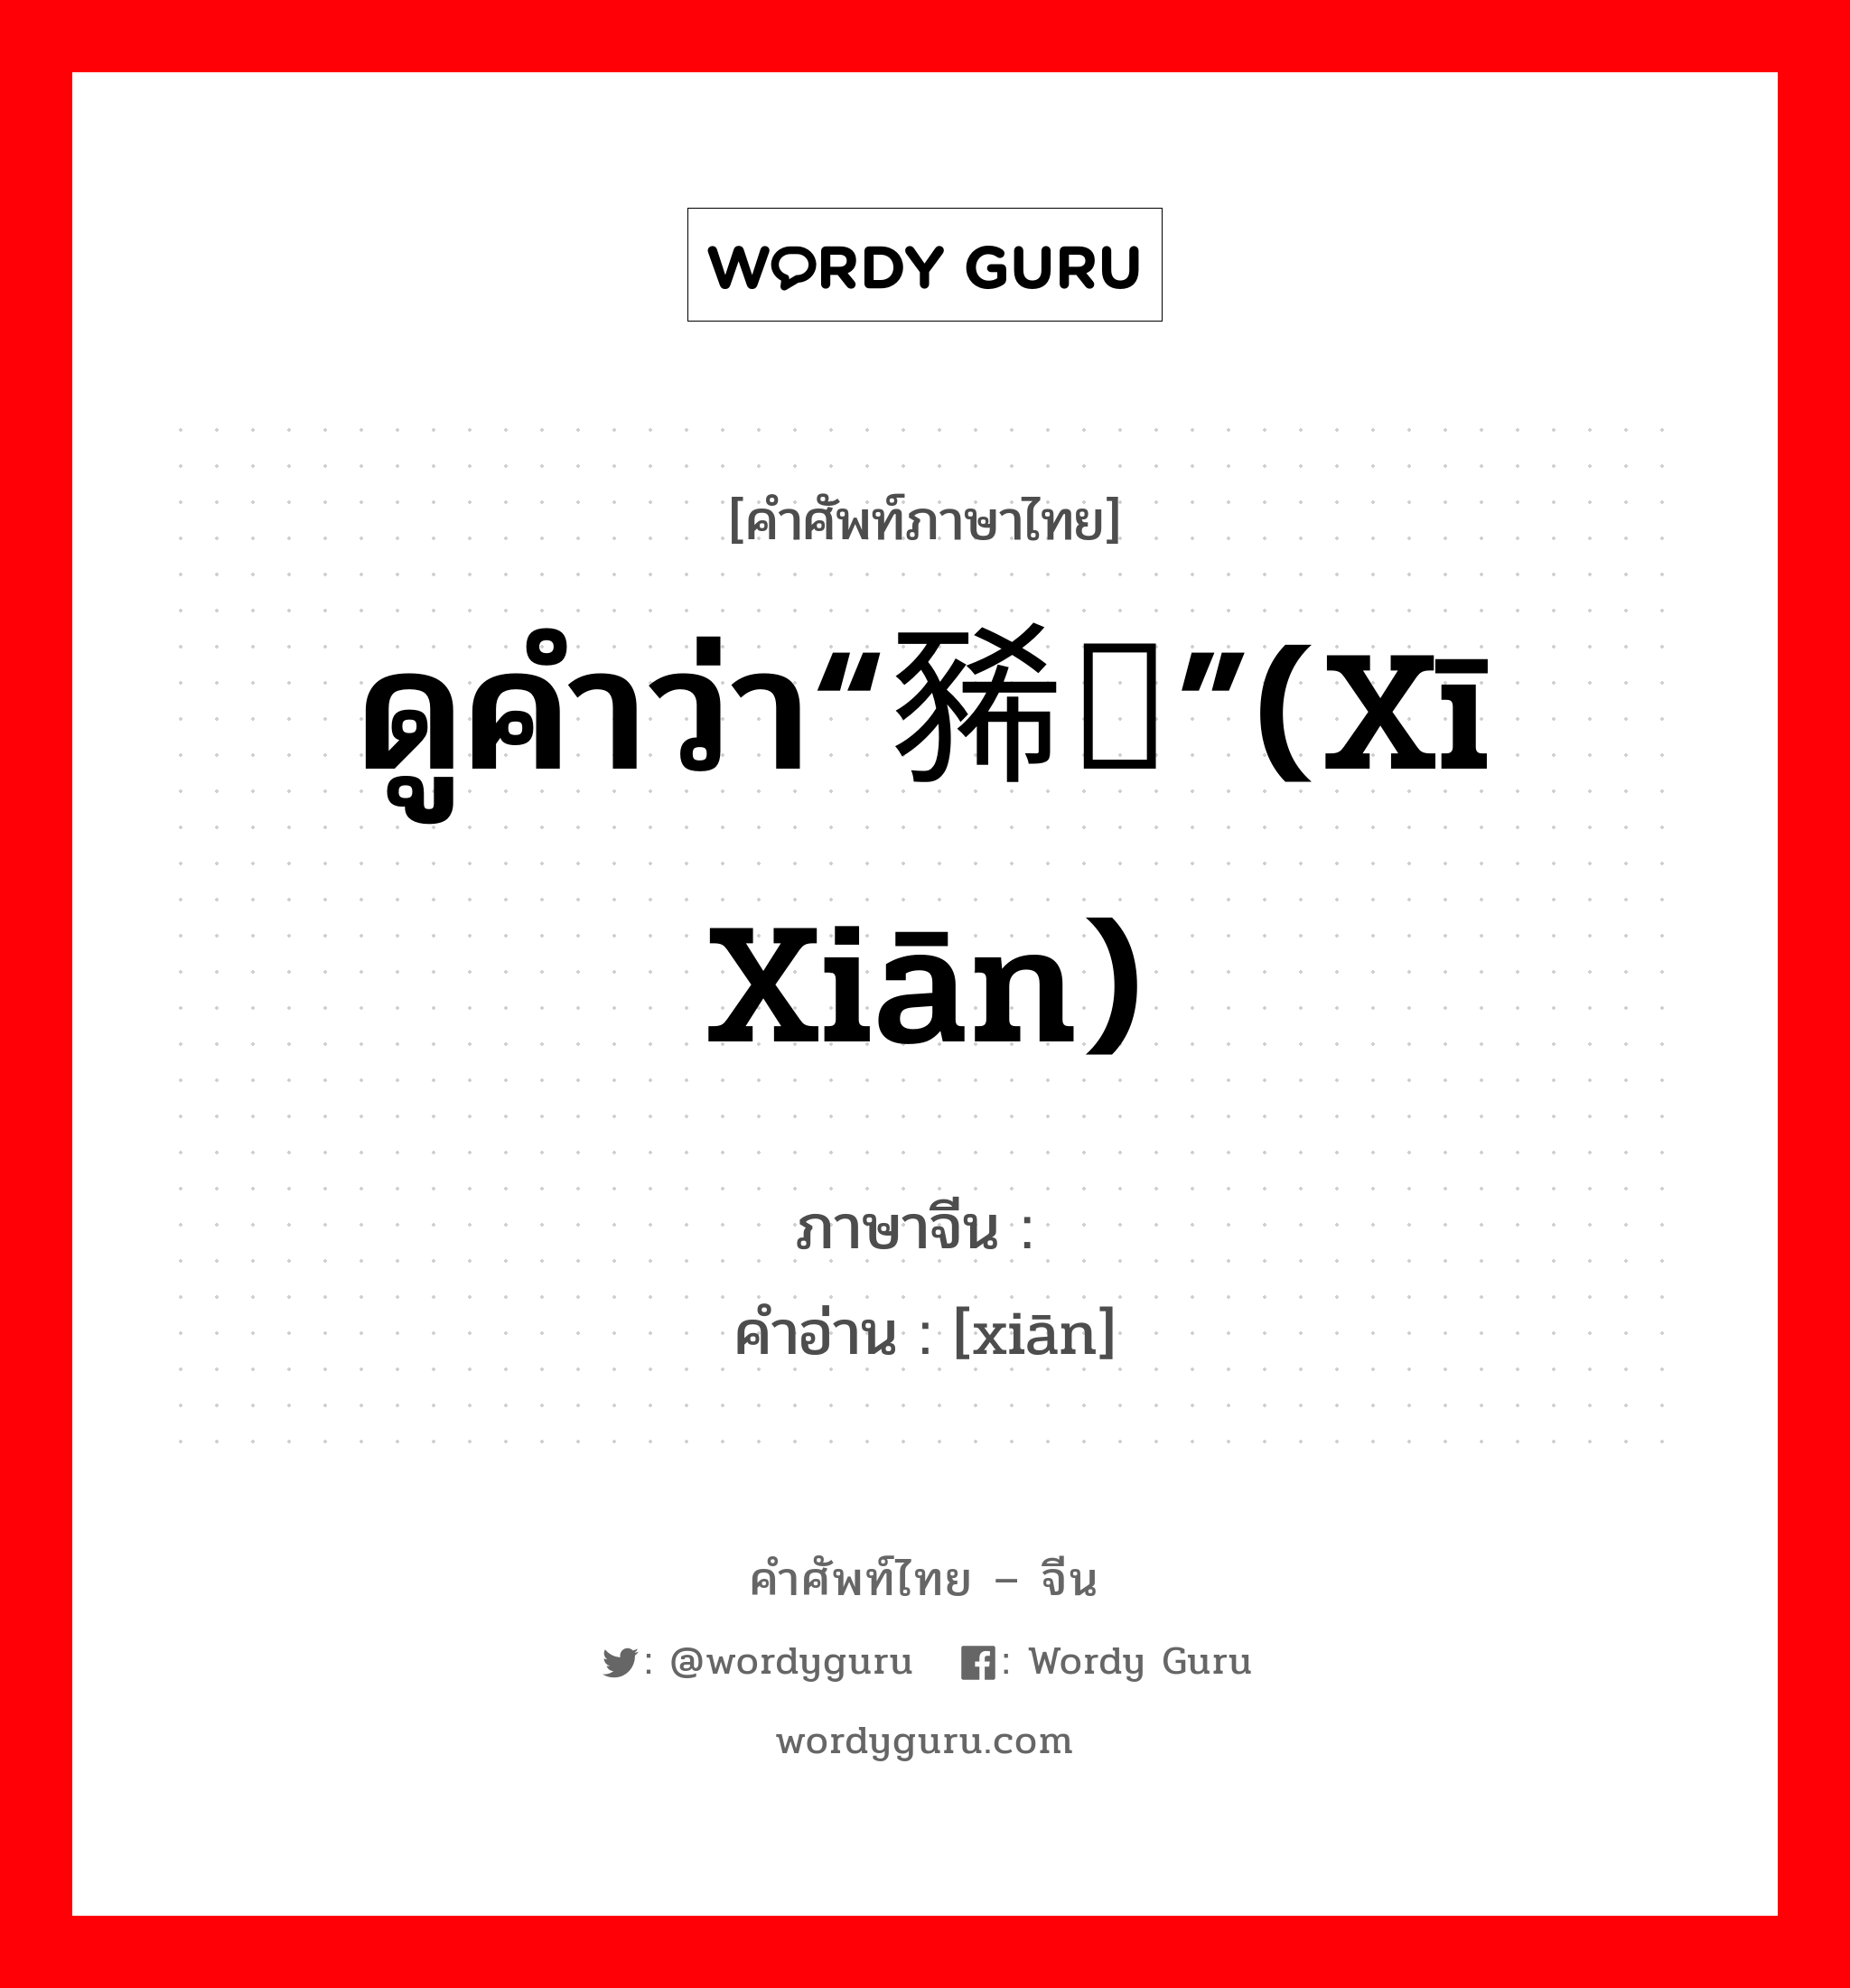 ดูคำว่า“豨莶”(xī xiān) ภาษาจีนคืออะไร, คำศัพท์ภาษาไทย - จีน ดูคำว่า“豨莶”(xī xiān) ภาษาจีน 莶 คำอ่าน [xiān]